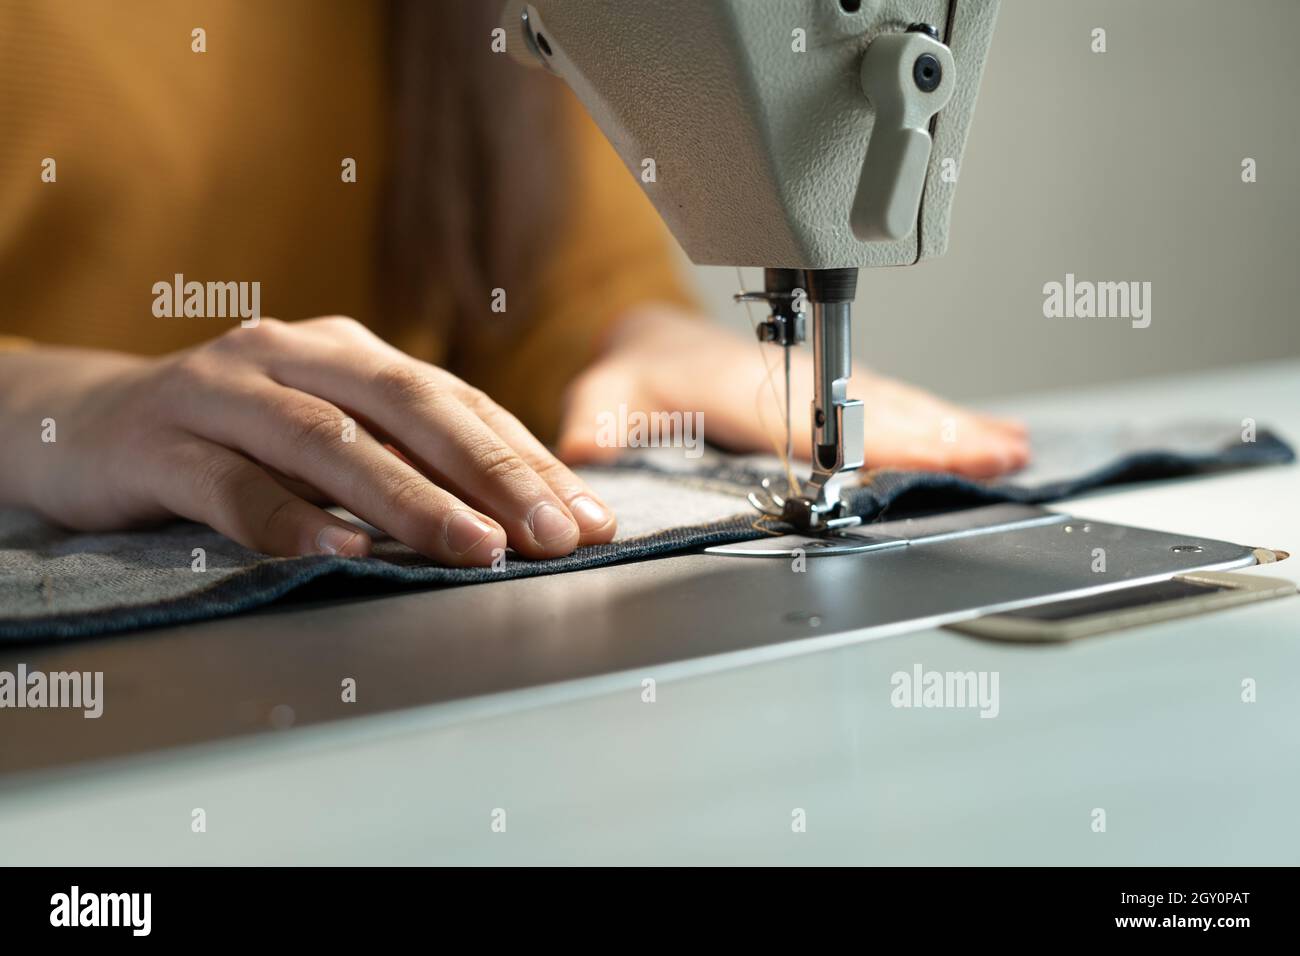 Las manos de la chica ponen la tela debajo de la aguja en la máquina de  coser mientras hacen la ropa. Concepto de trabajo de taller de costura  Fotografía de stock -